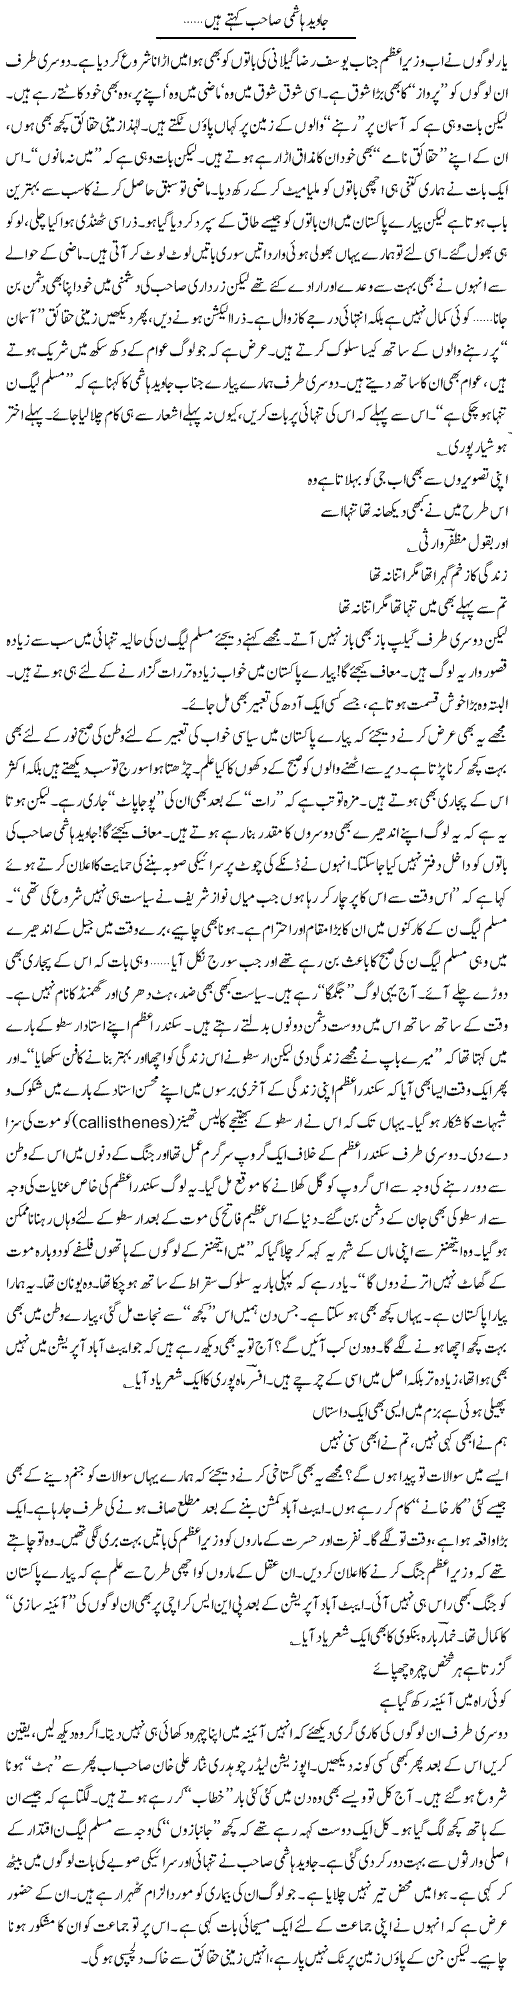 Mr Javed Hashmi Express Column Ijaz Abdul Hafeez 9 June 2011